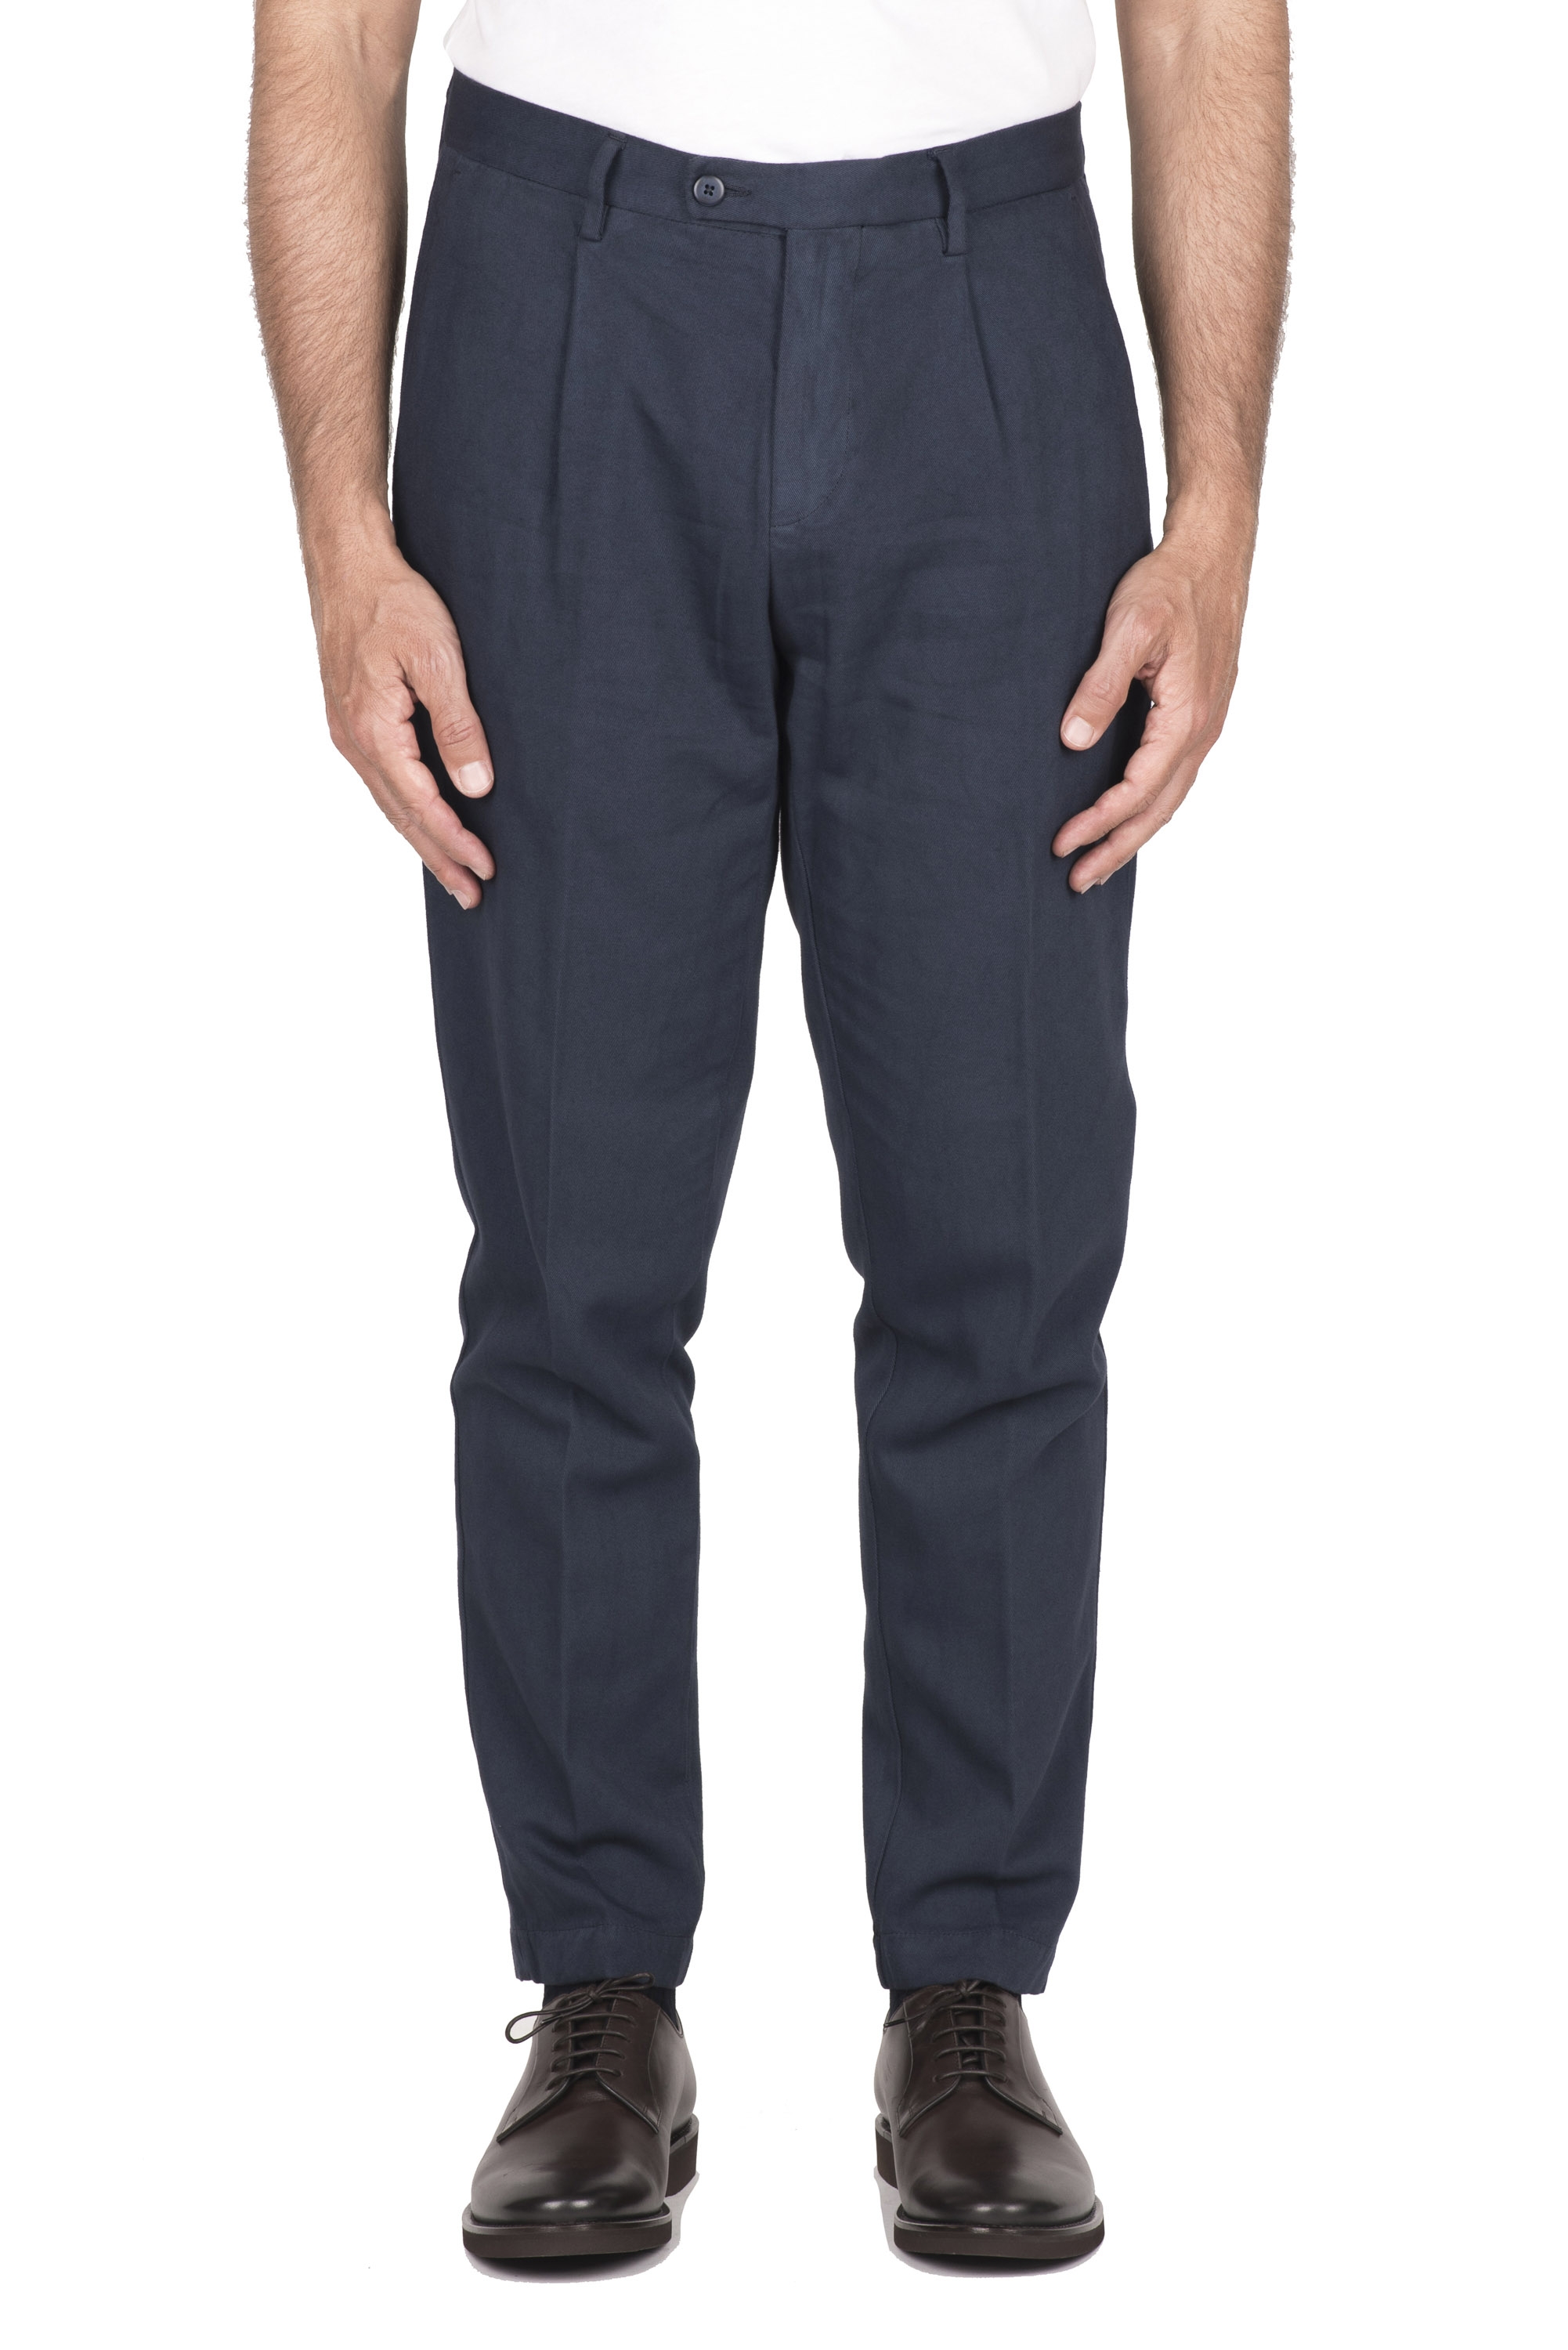 SBU 04606_23AW Pantalón clásico de algodón elástico azul con pinzas 01